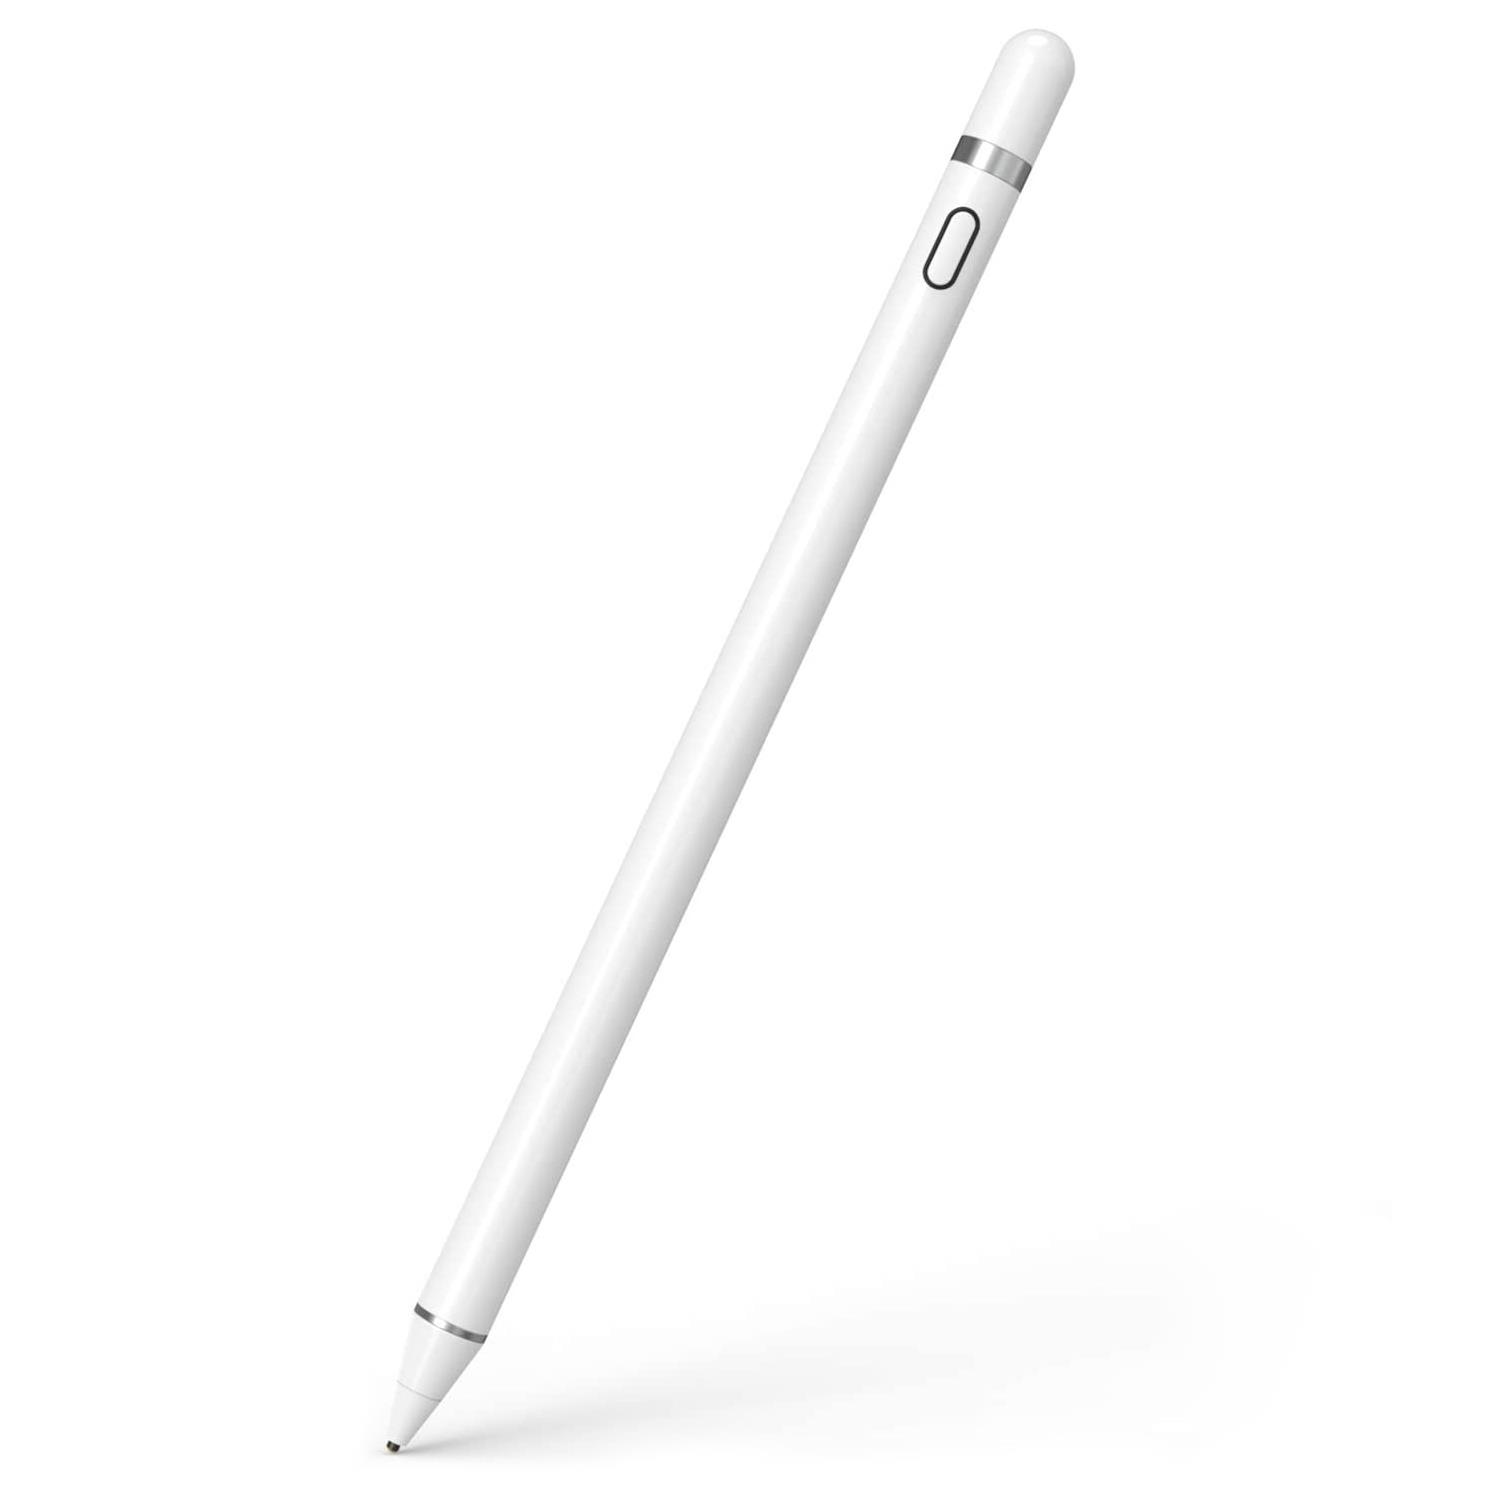 Microsonic Pencil Hassas Stylus Şarj Edilebilir Dokunmatik Çizim Kalemi Beyaz